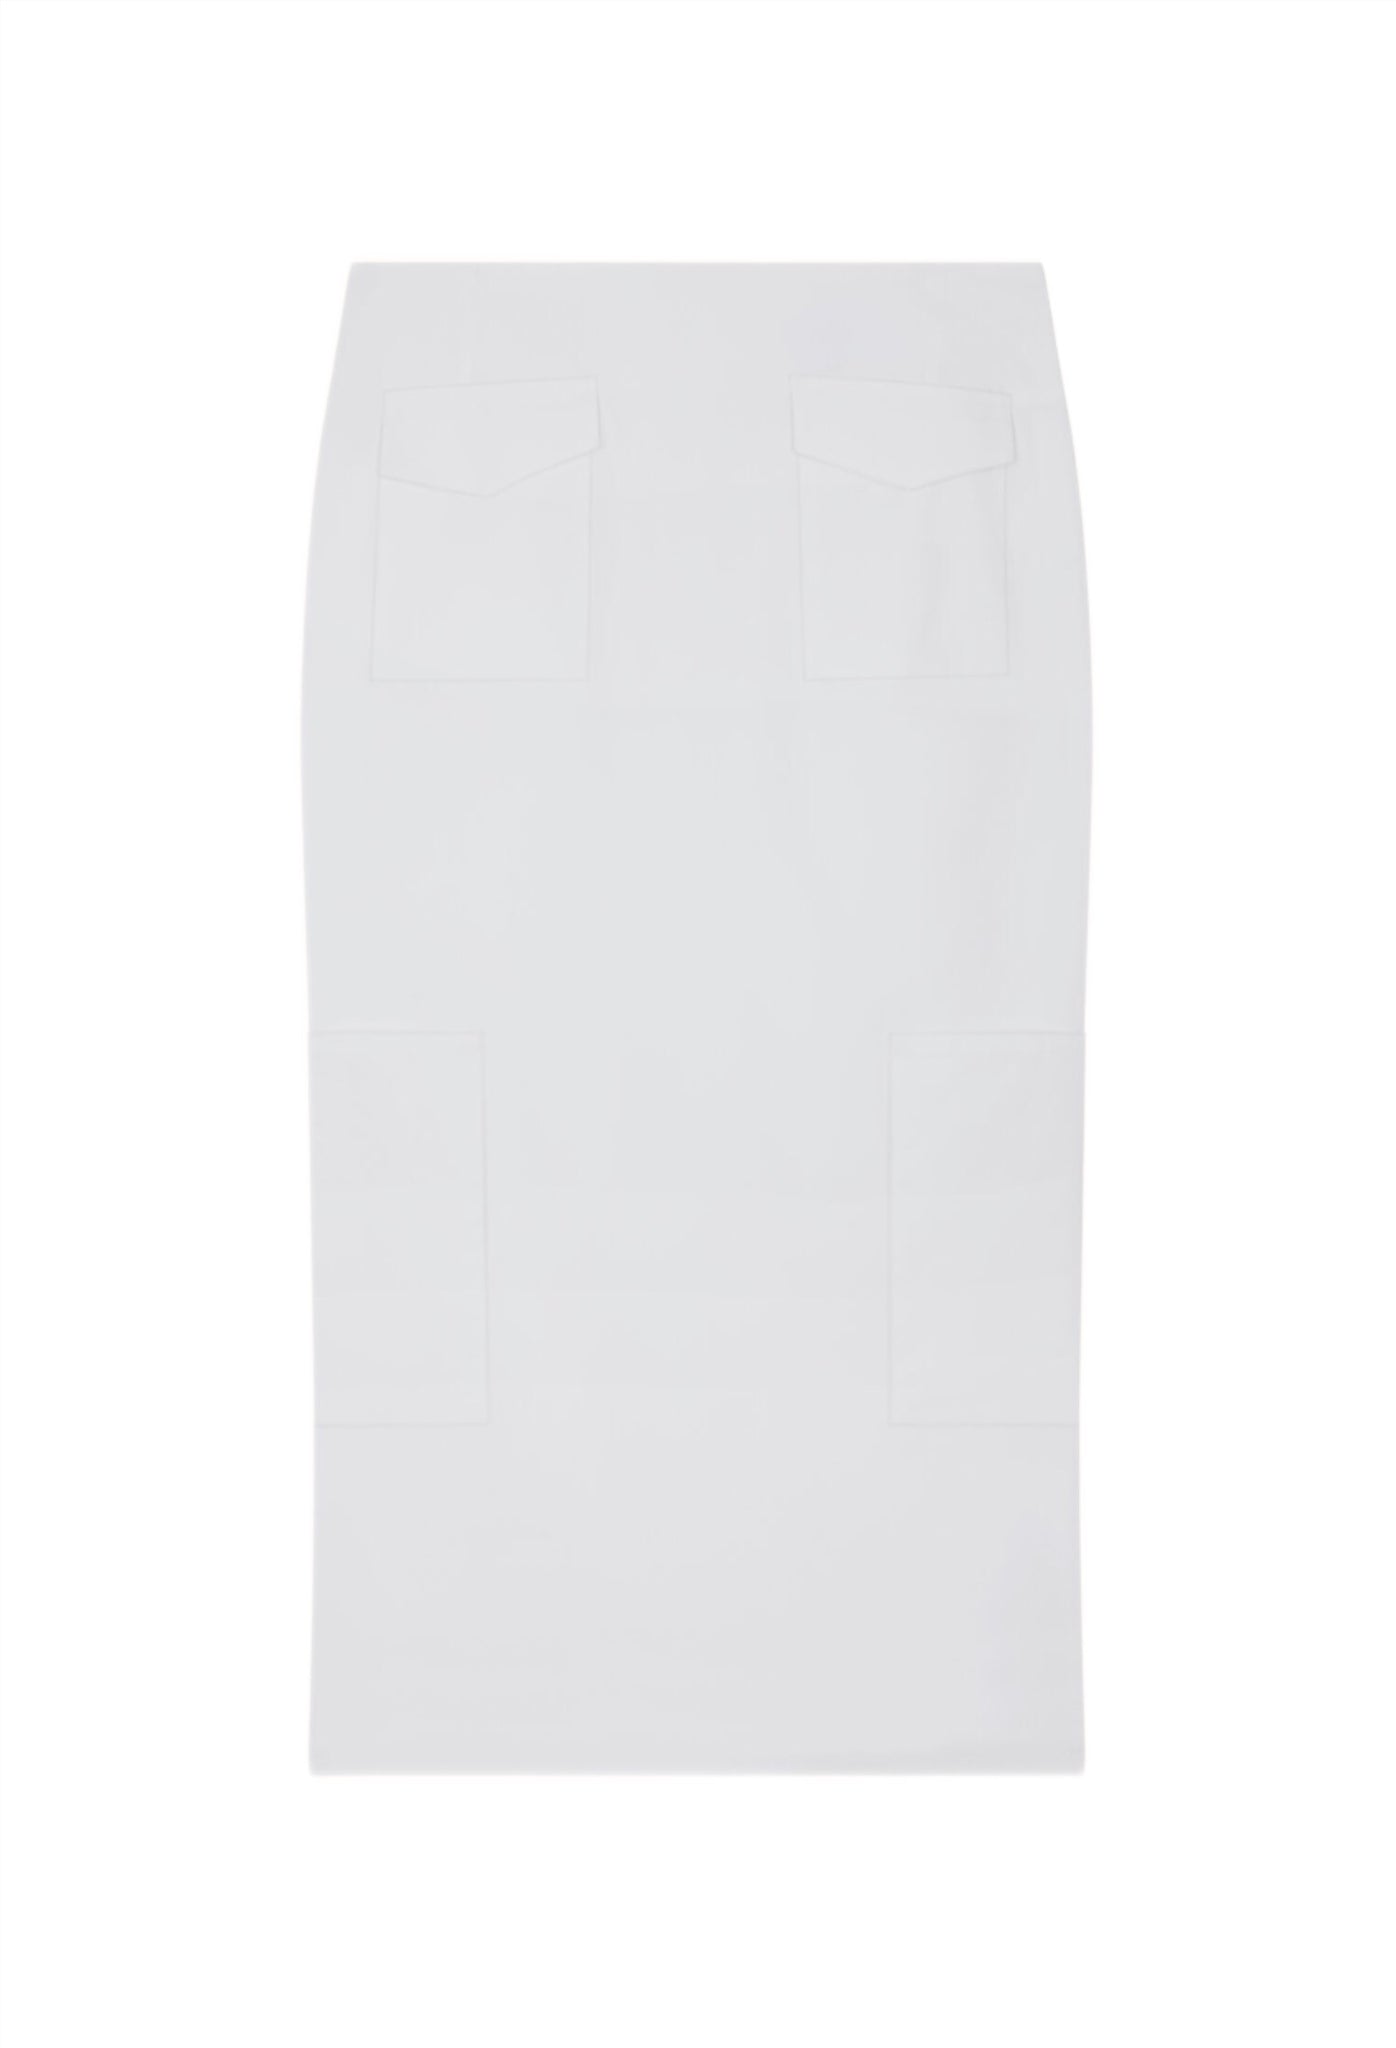 The Valletta Skirt in White Poplin